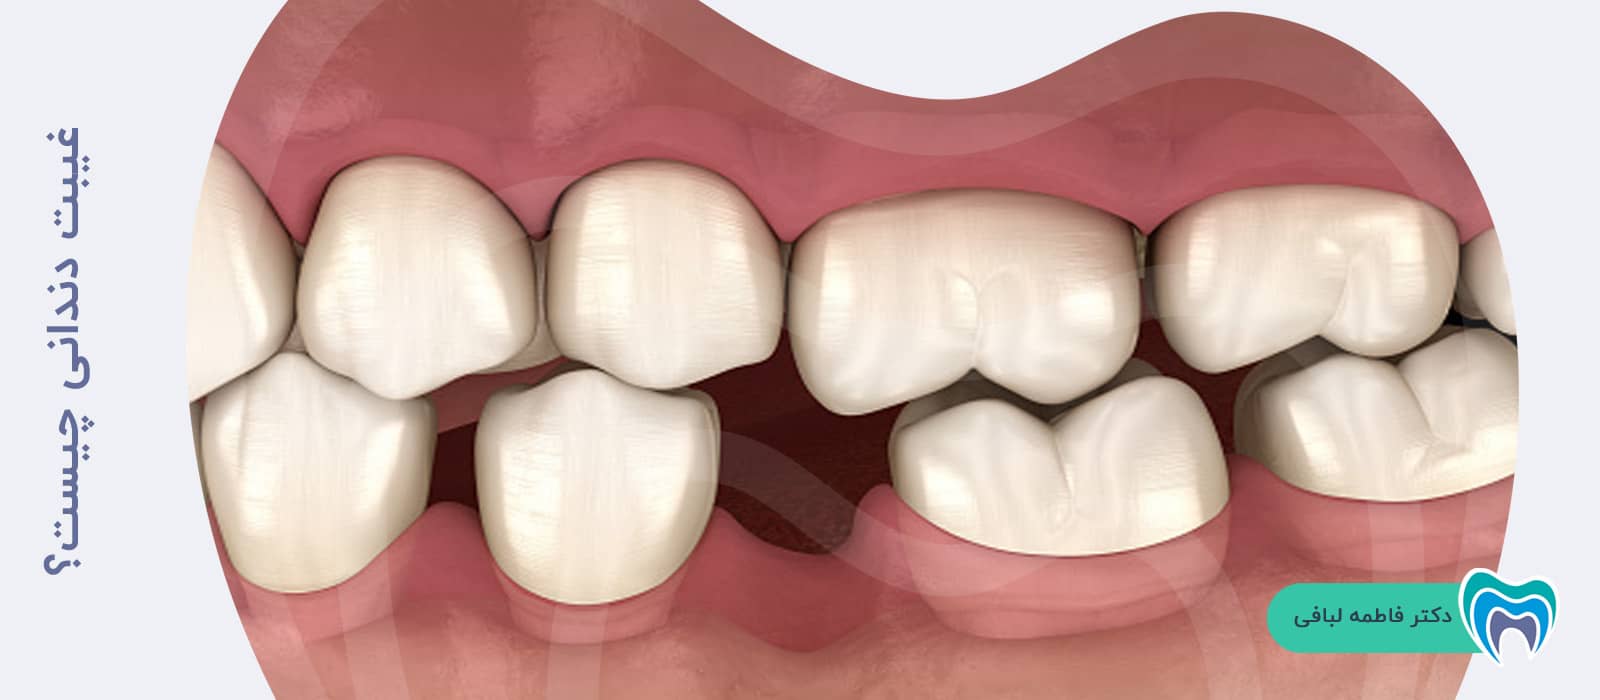 غیبت دندانی چیست؟